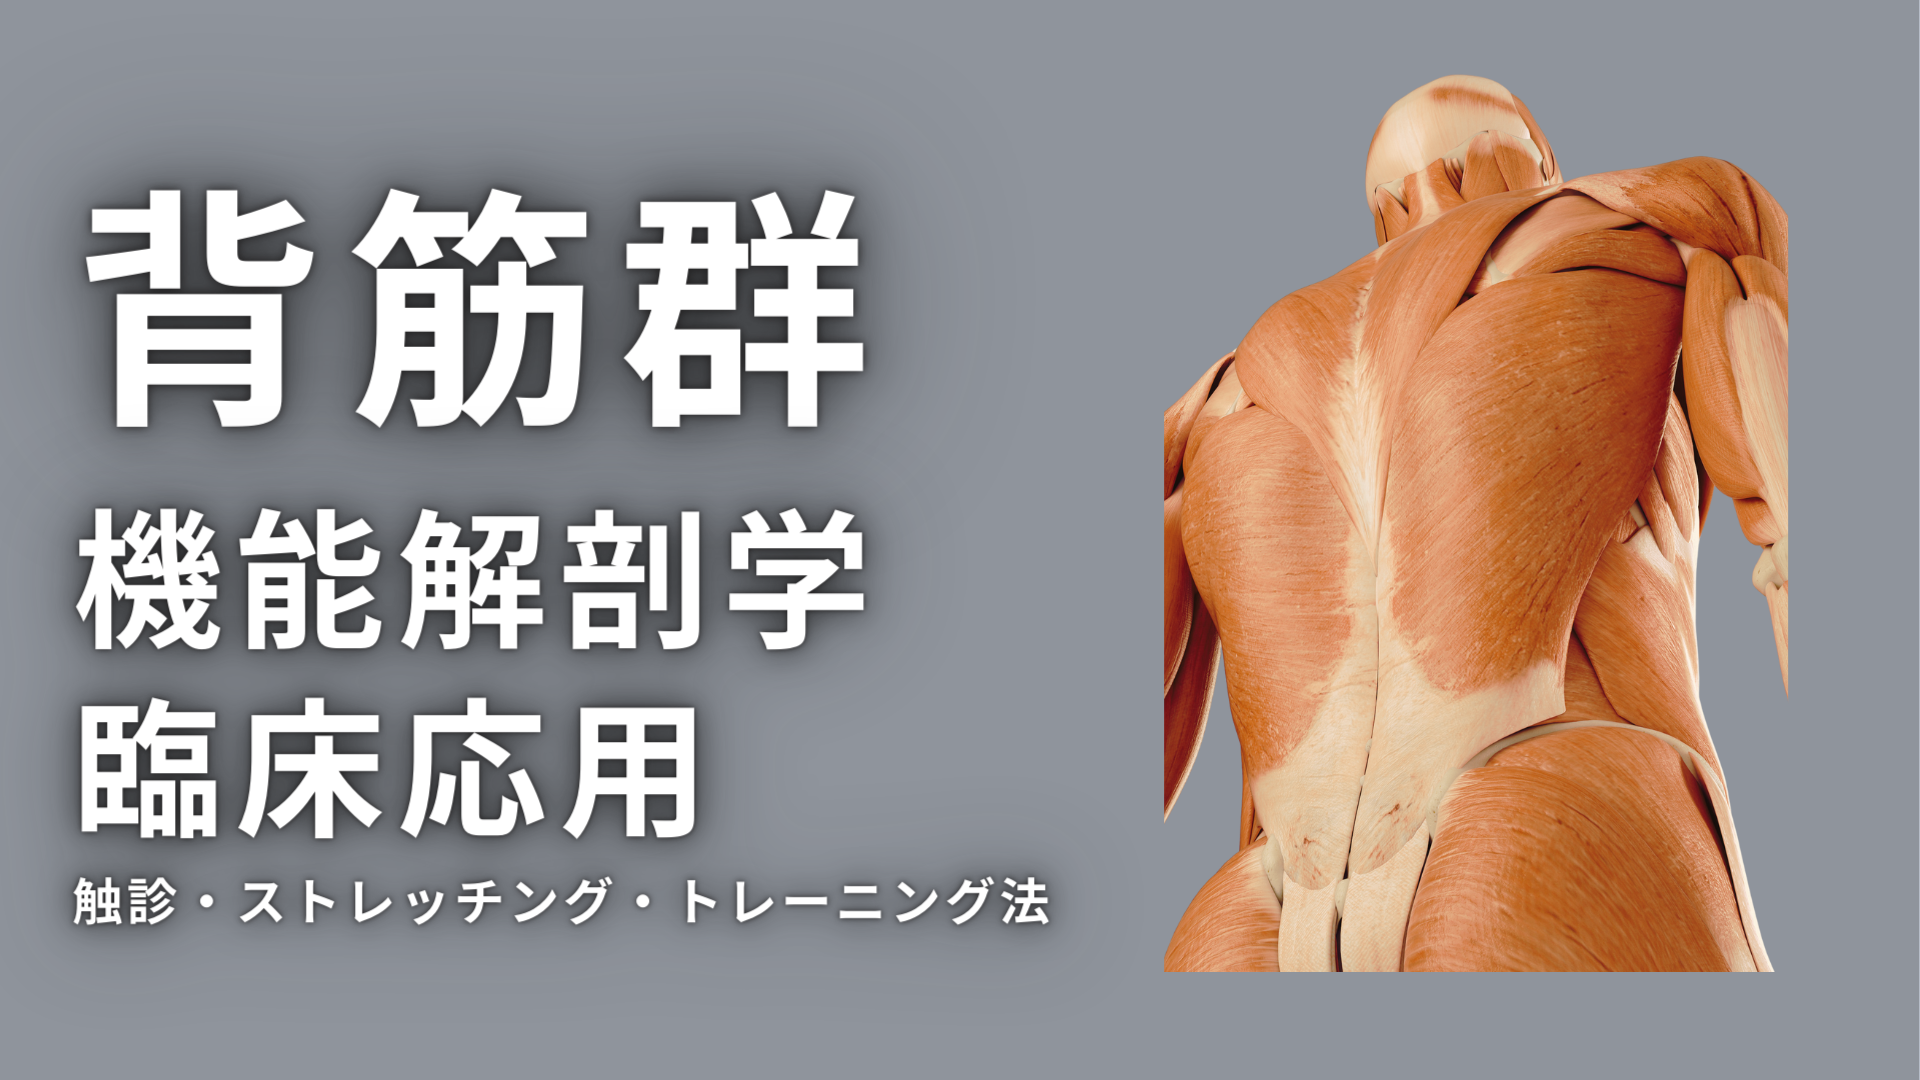 背筋群の機能解剖学と臨床応用（触診・ストレッチング・トレーニング）